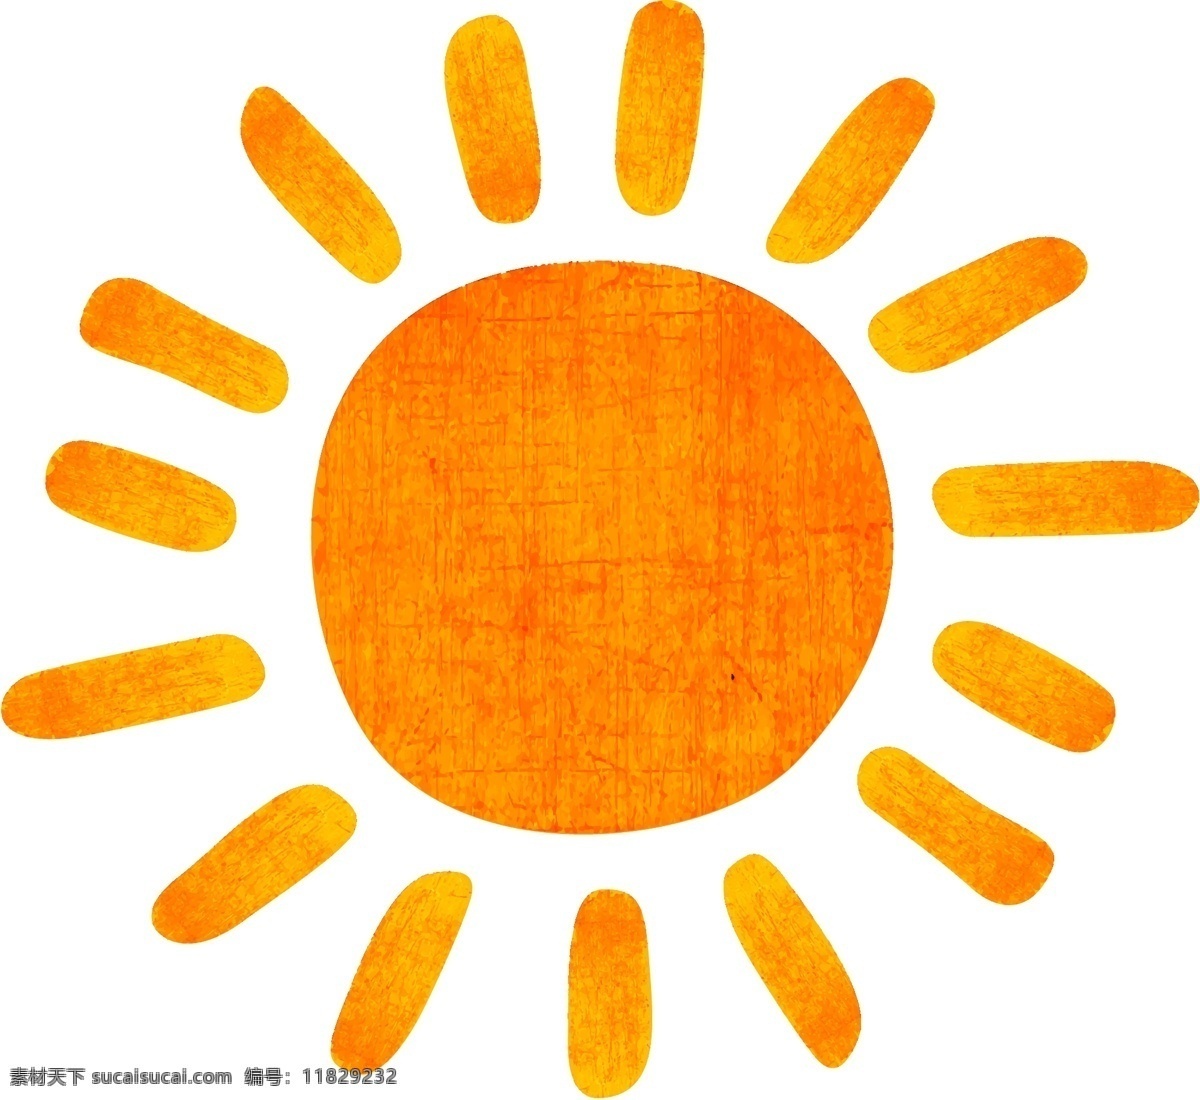 阳光 日光 红日 夏季 夏日 太阳 橙色太阳 手绘太阳 卡通太阳 手绘 矢量 矢量太阳 橙色 橘色 桔色 天空 夜空 月亮 自然景观